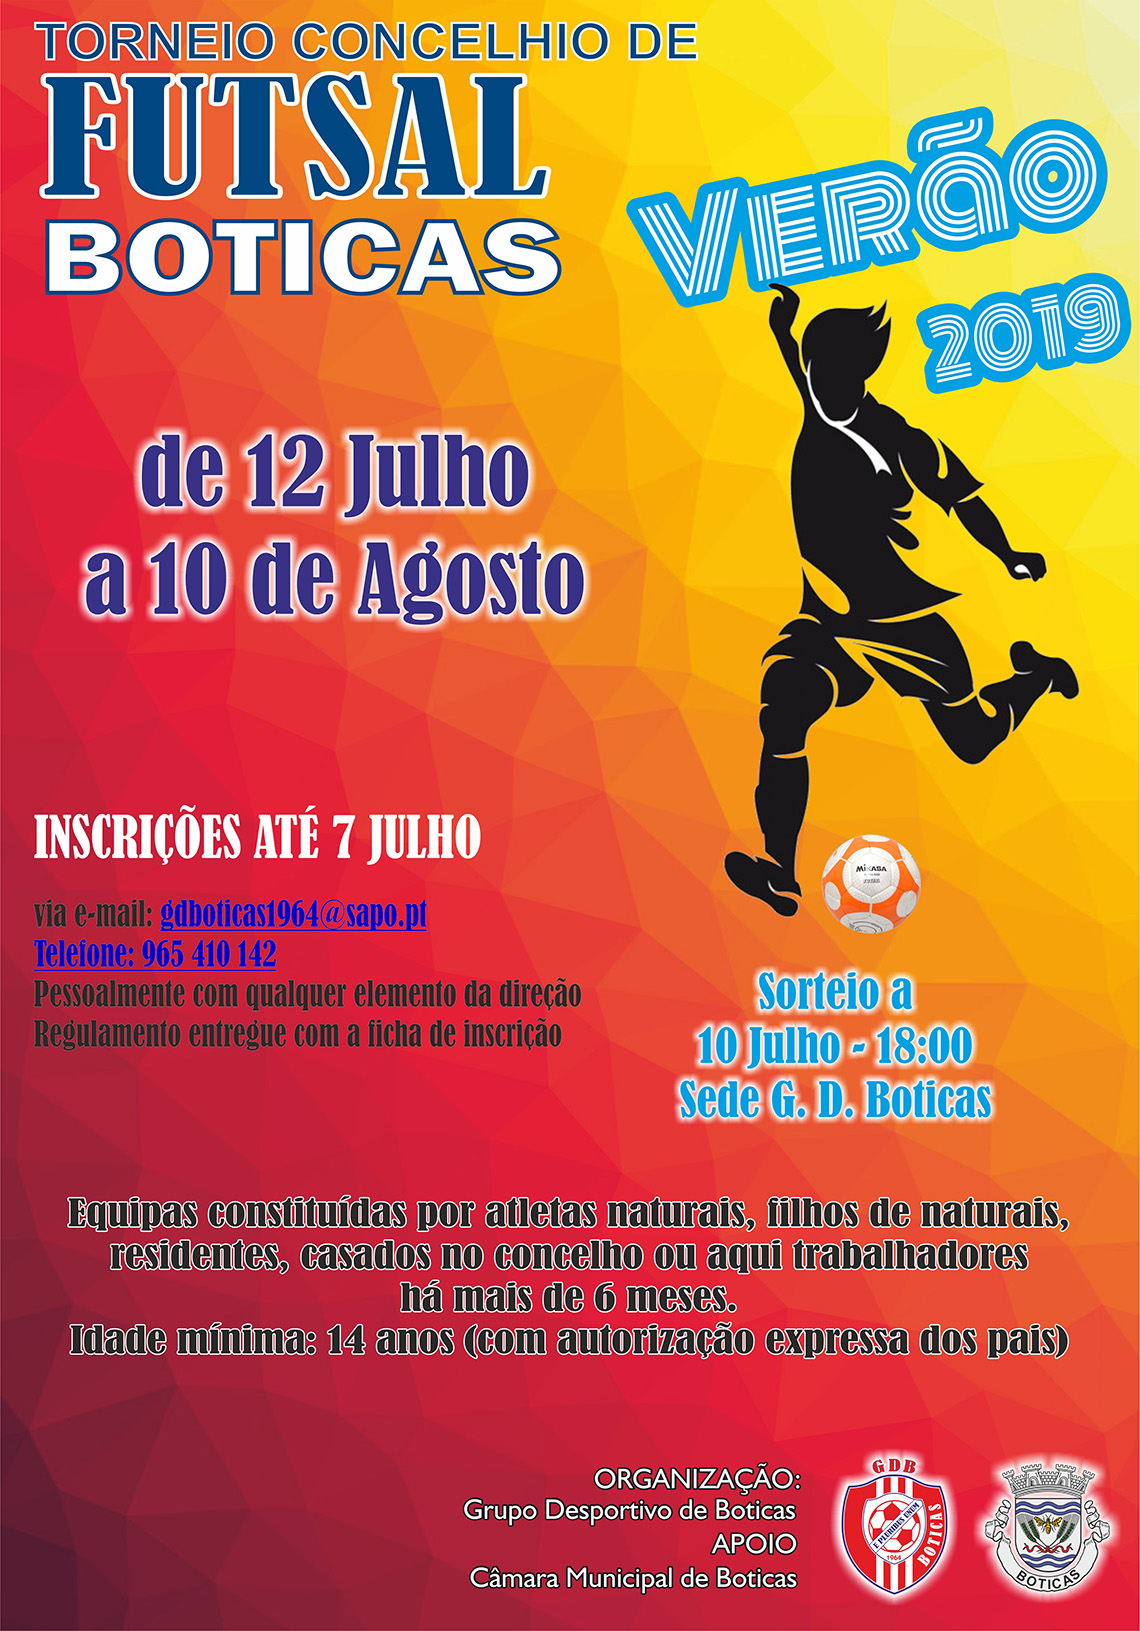 Torneio Concelhio de Futsal Vero 2019